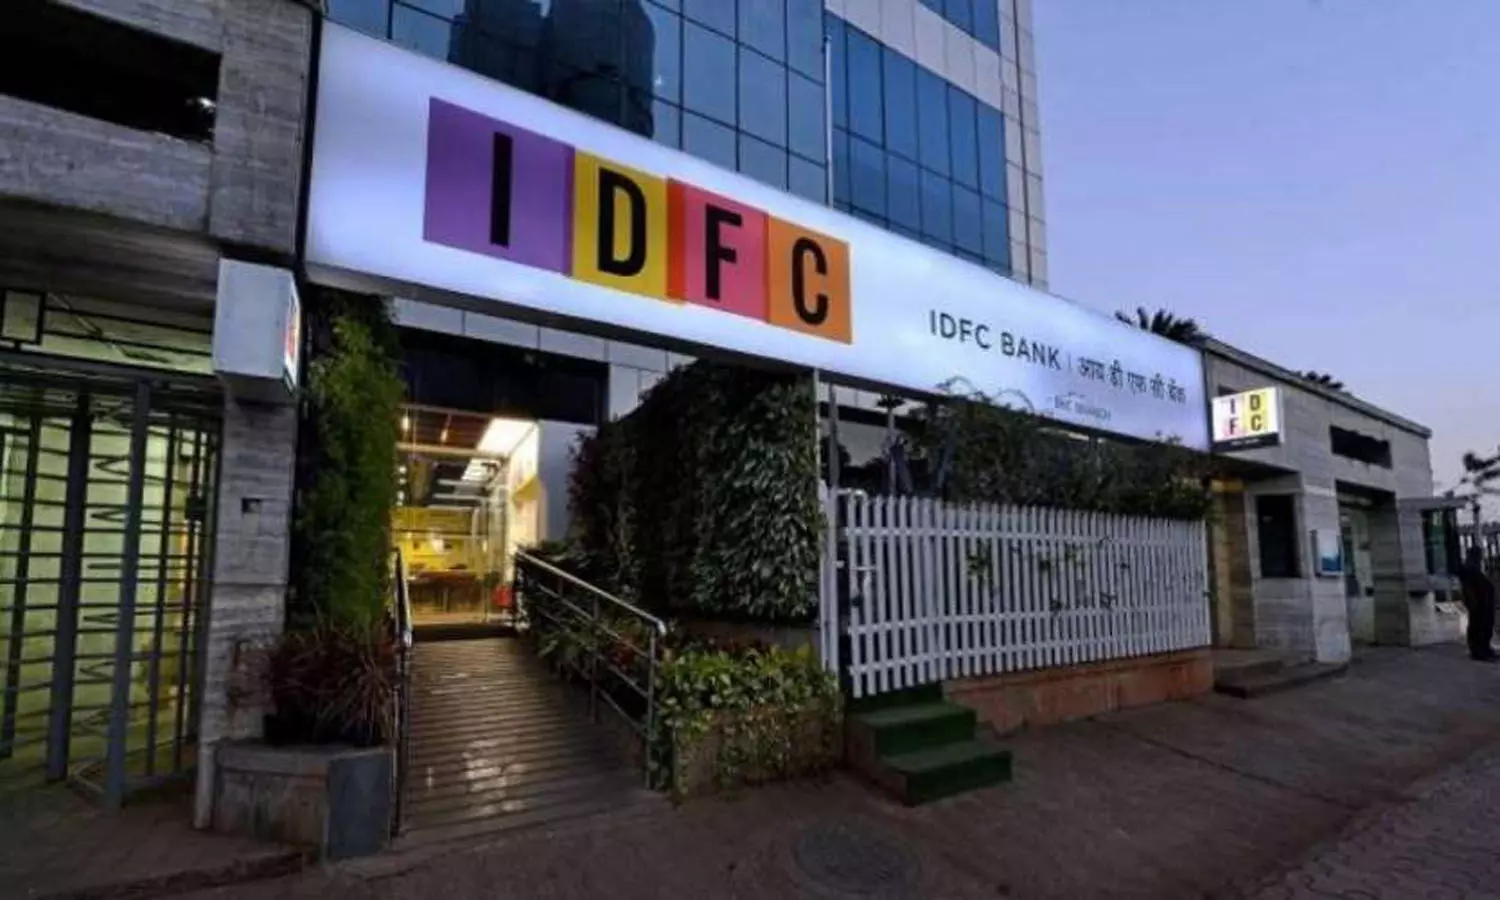 IDFC Bank ने आज से घटाई ब्याज दरें, फटाफट चेक करें लेटेस्ट रेट